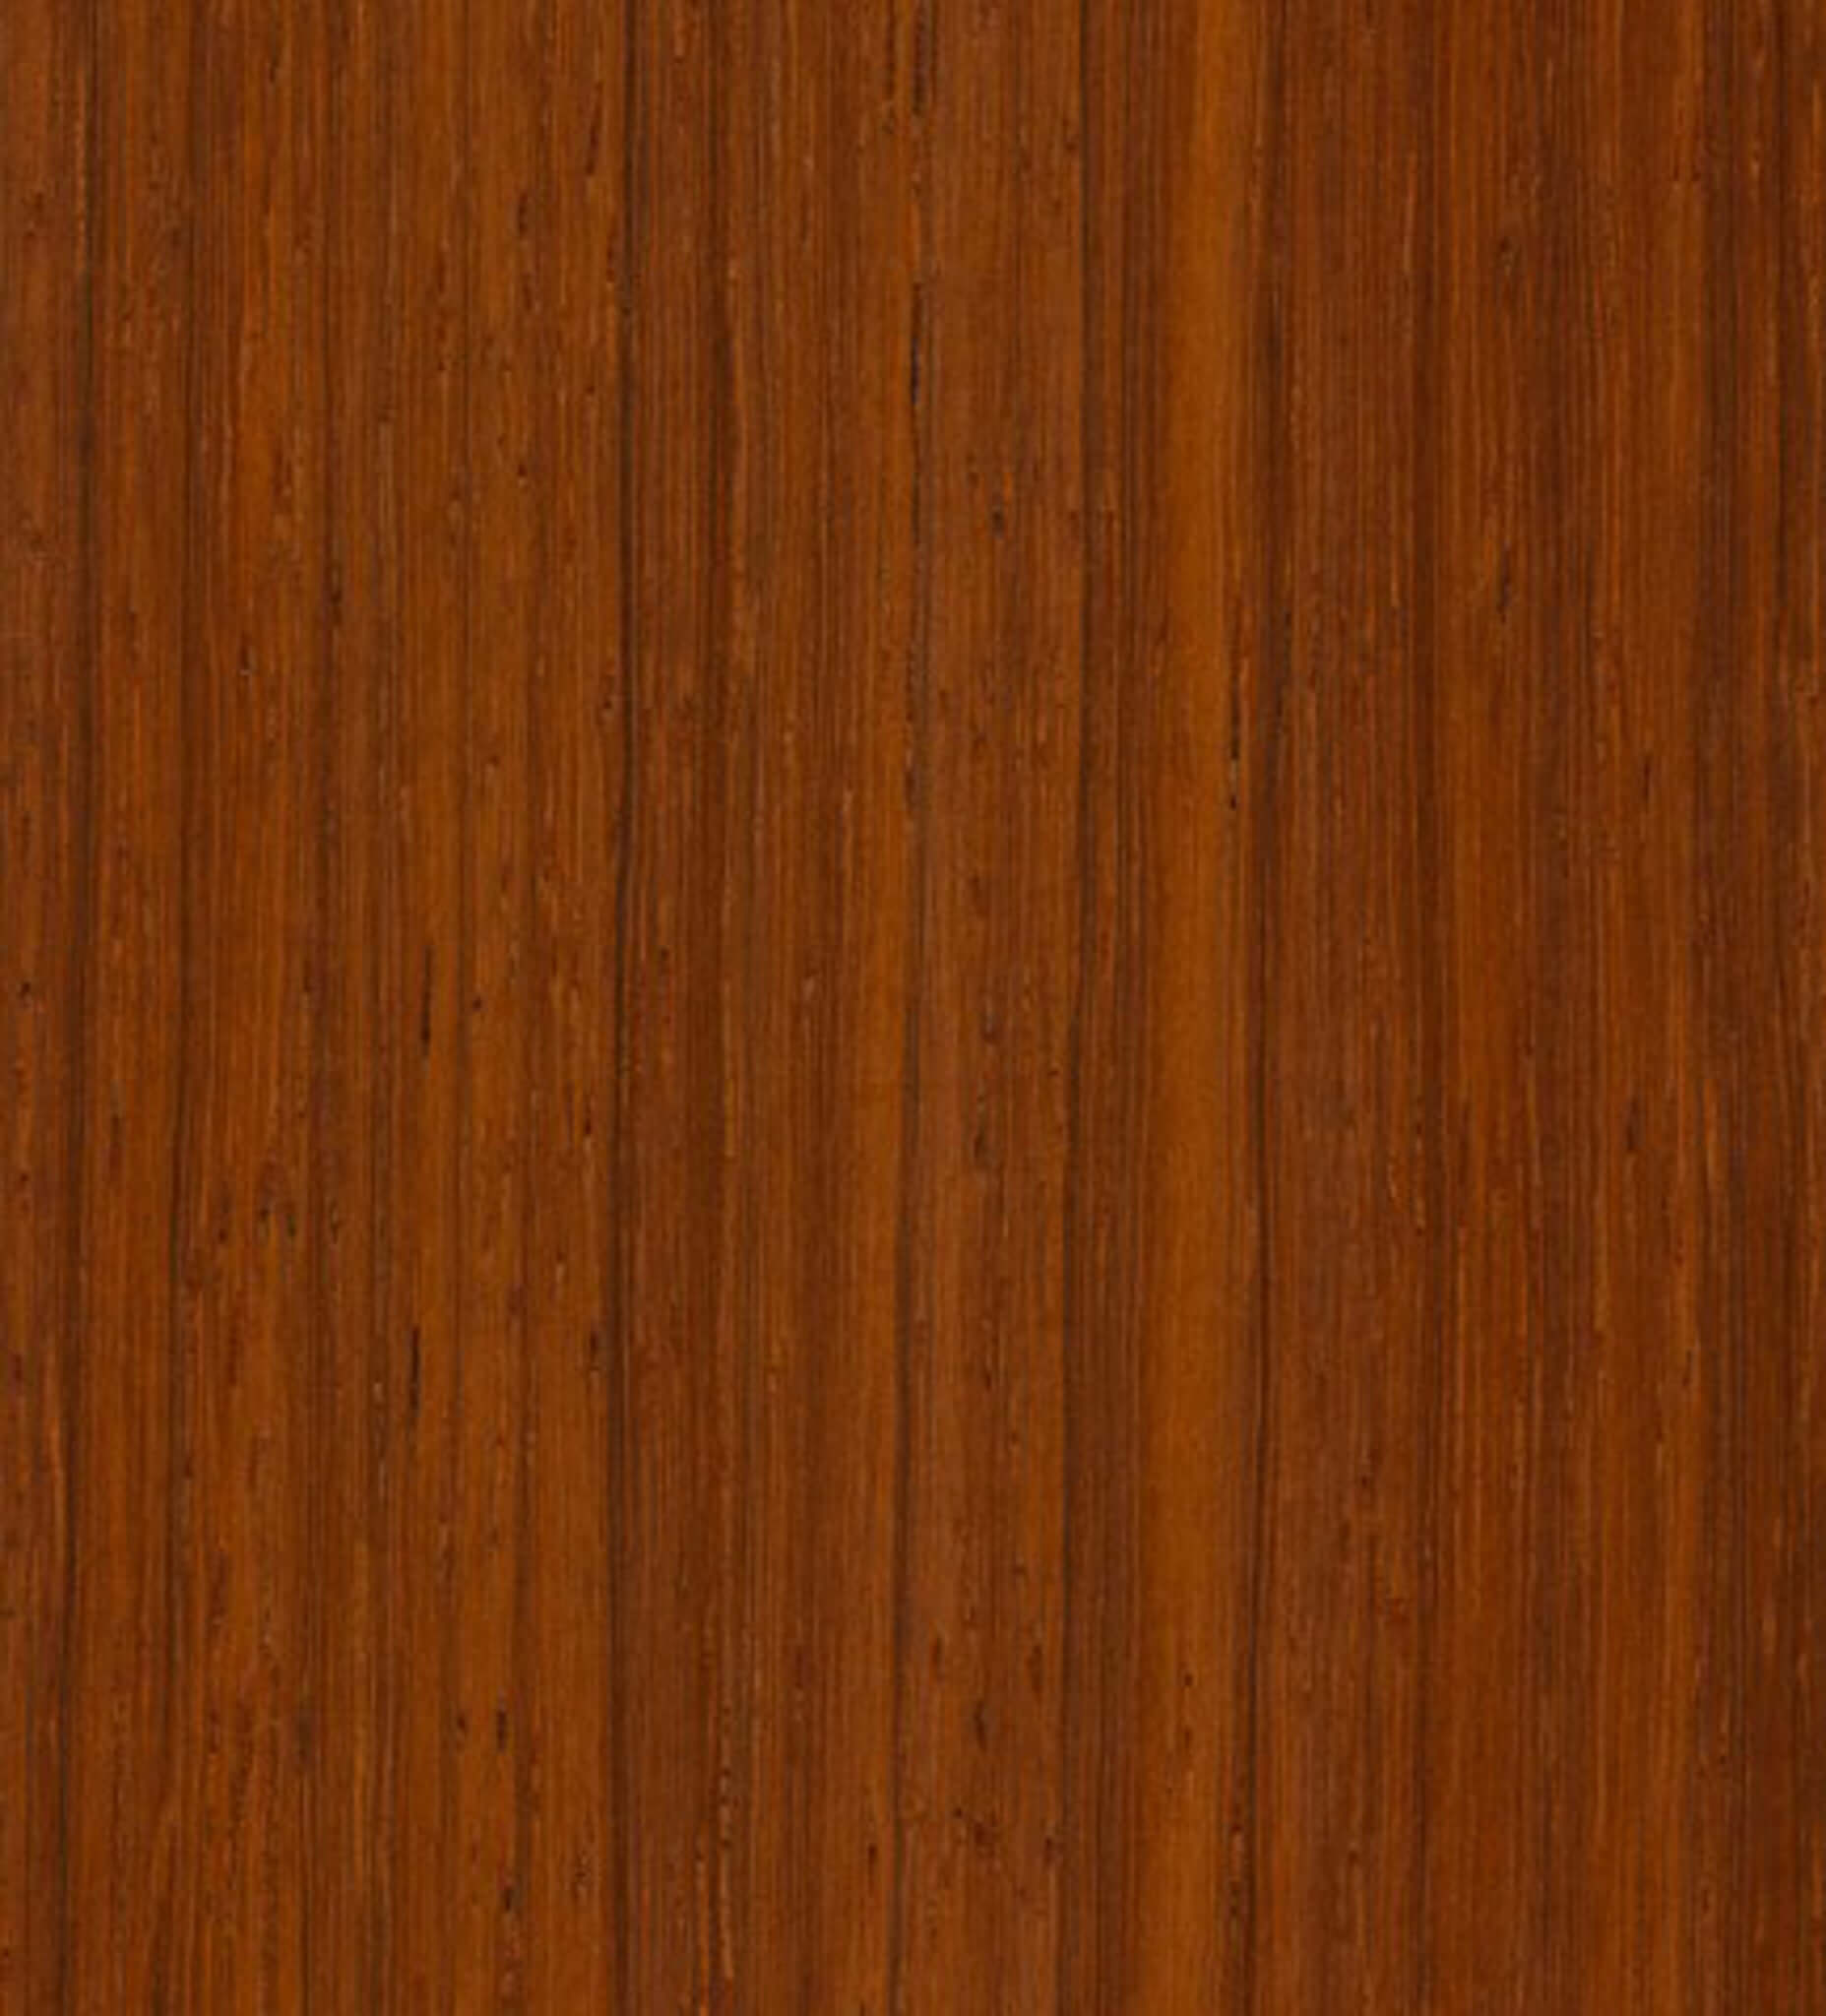 a sample of padauk wood